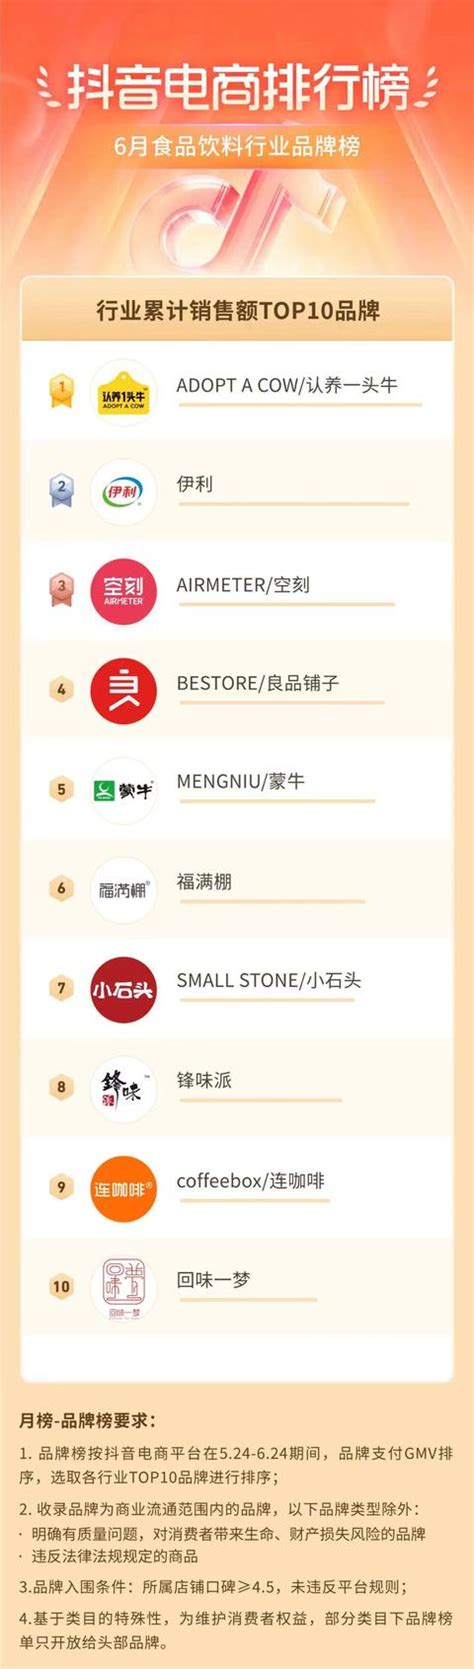 中国零食品牌10大品牌排名_誉云网络